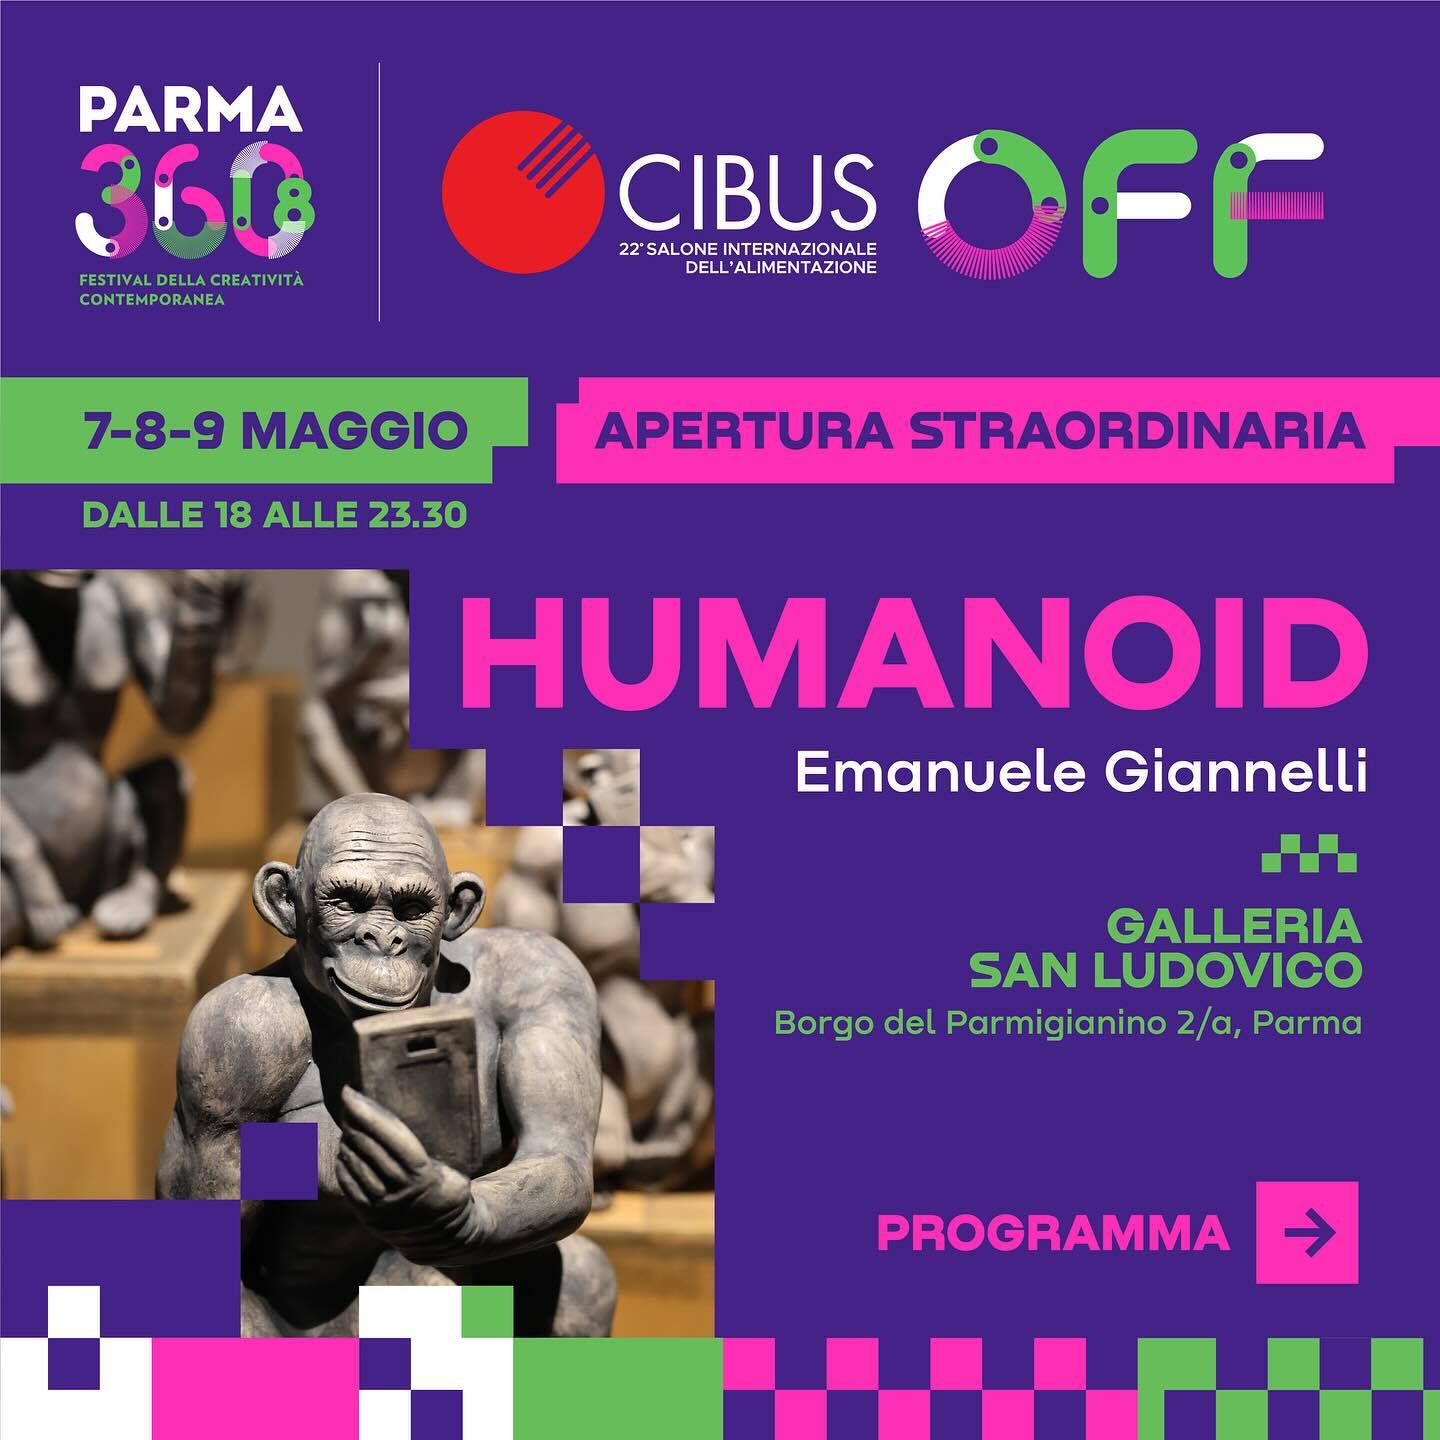 CIBUS OFF: Tre giorni di apertura straordinaria della mostra di Emanuele Giannelli Scultore, live show, performance, musica